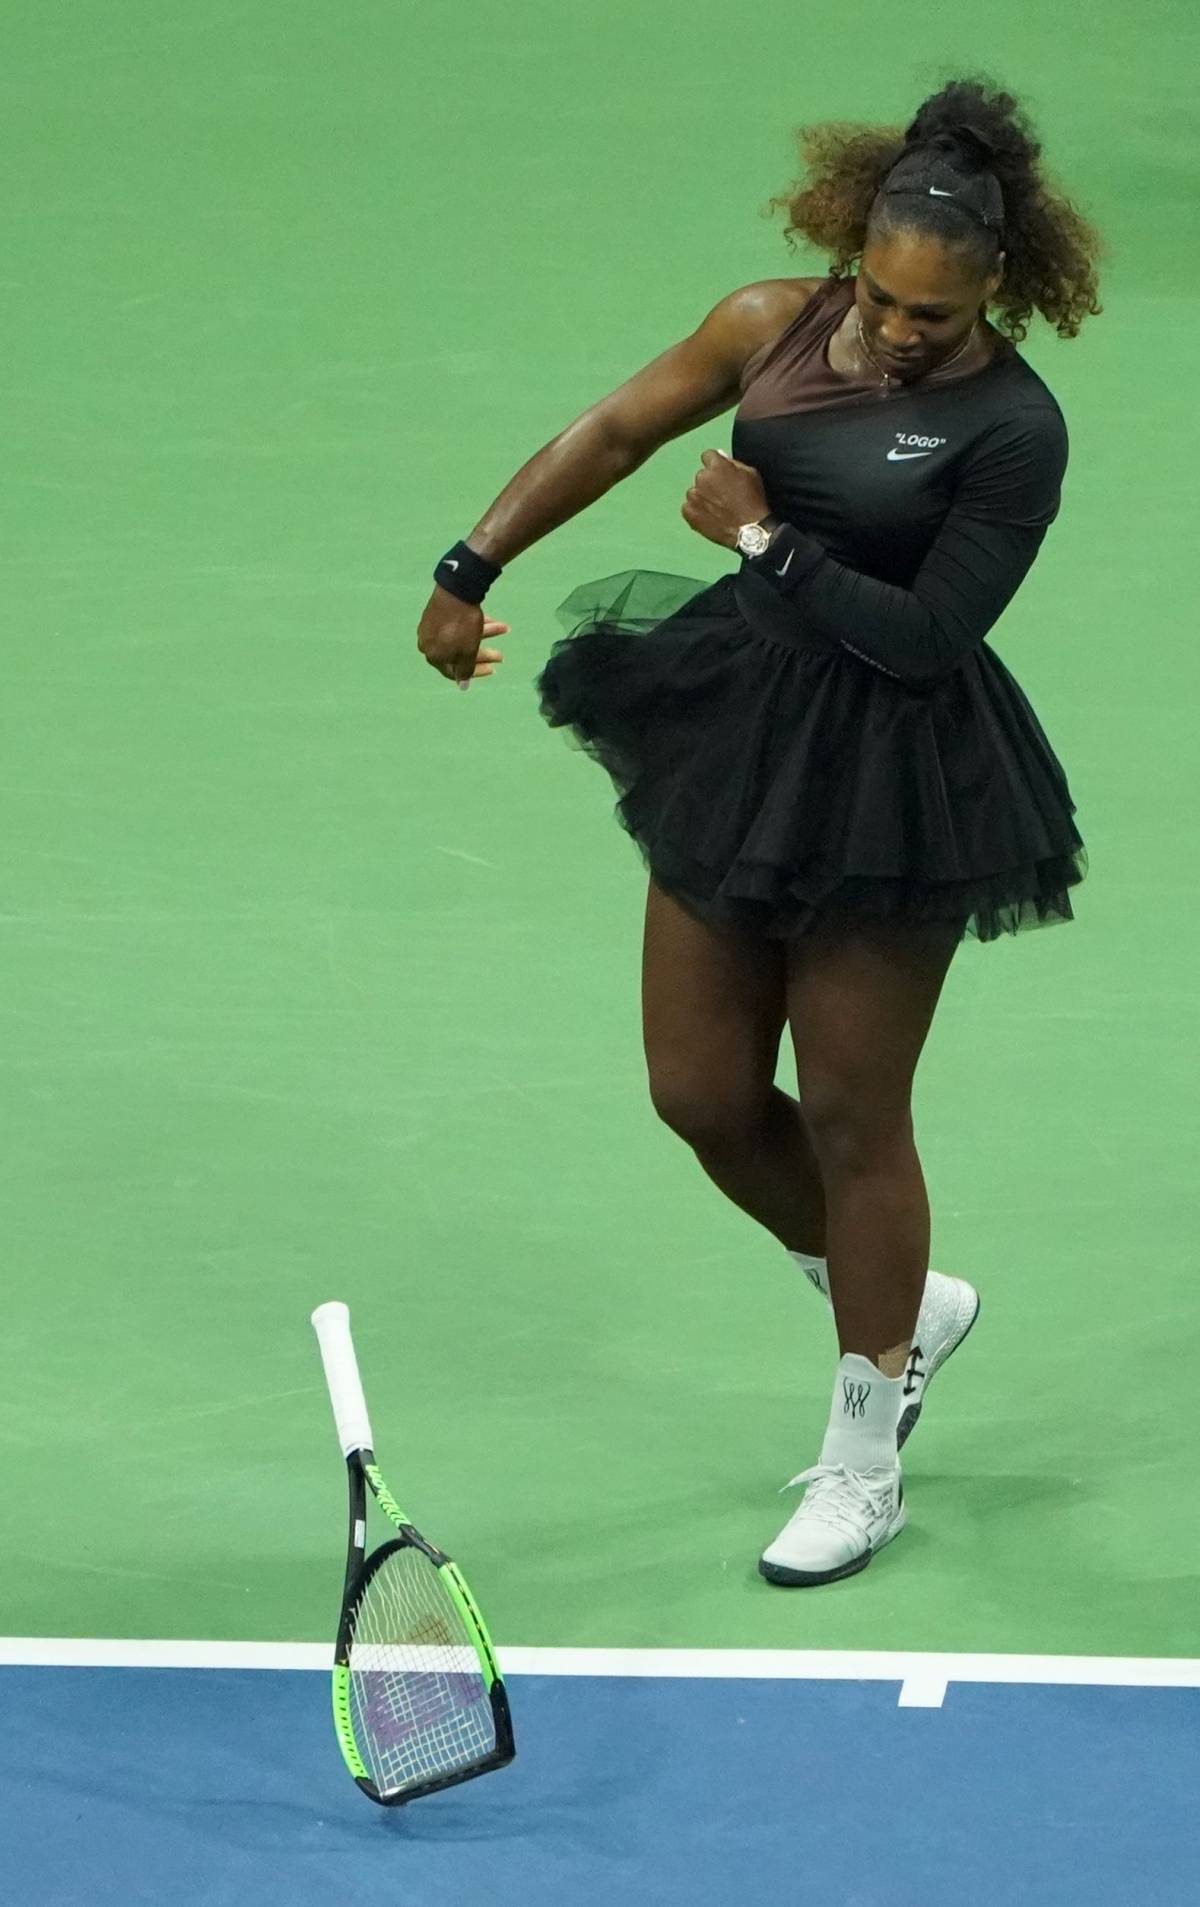 La vergogna di Serena spegne le luci alla Osaka